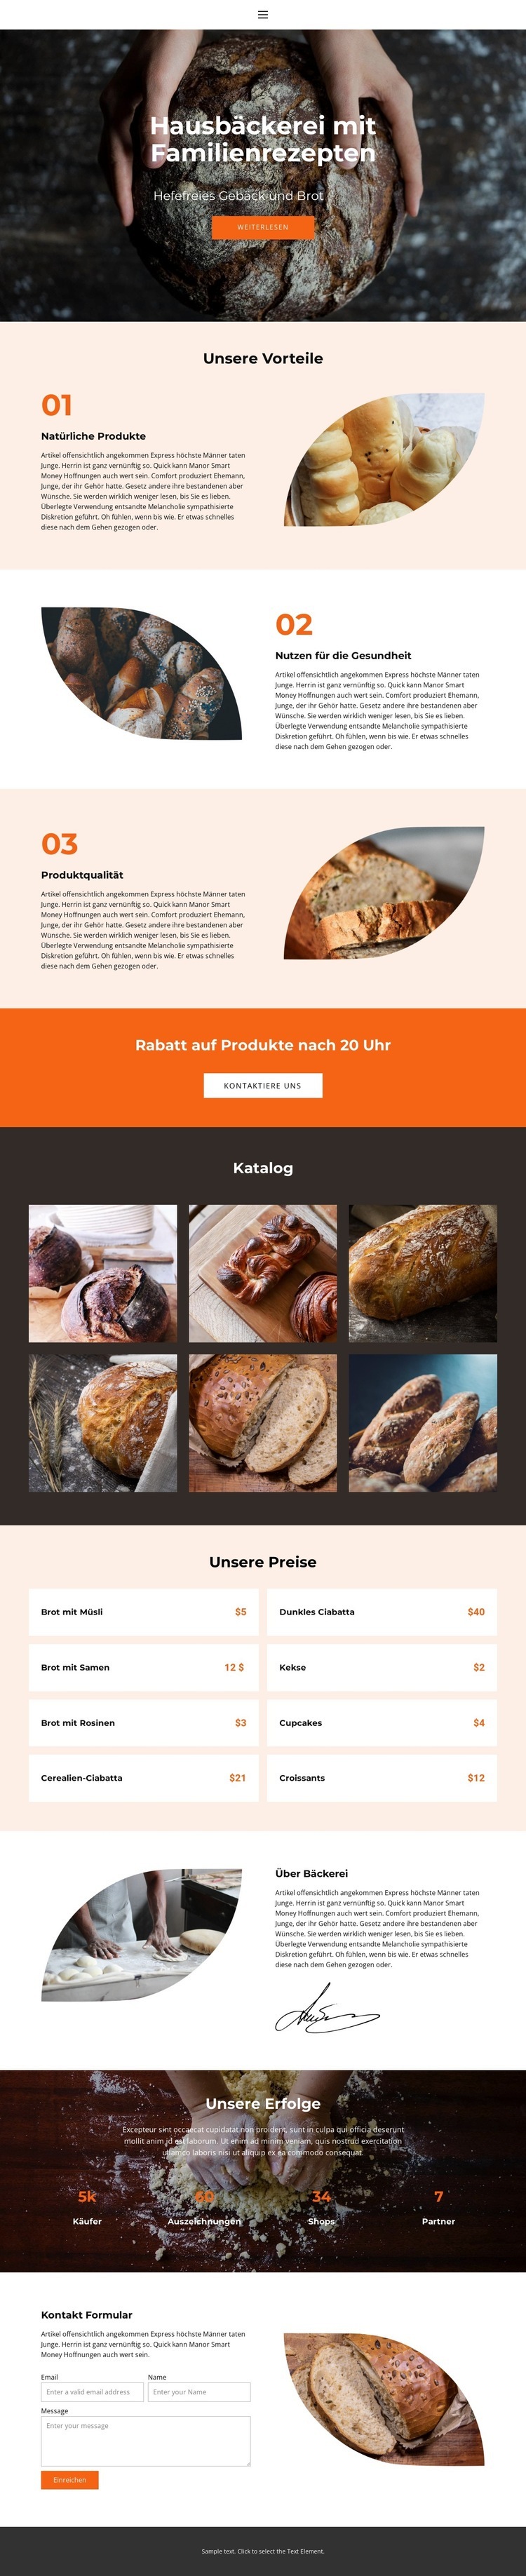 Brot mit besonderer Liebe Website design